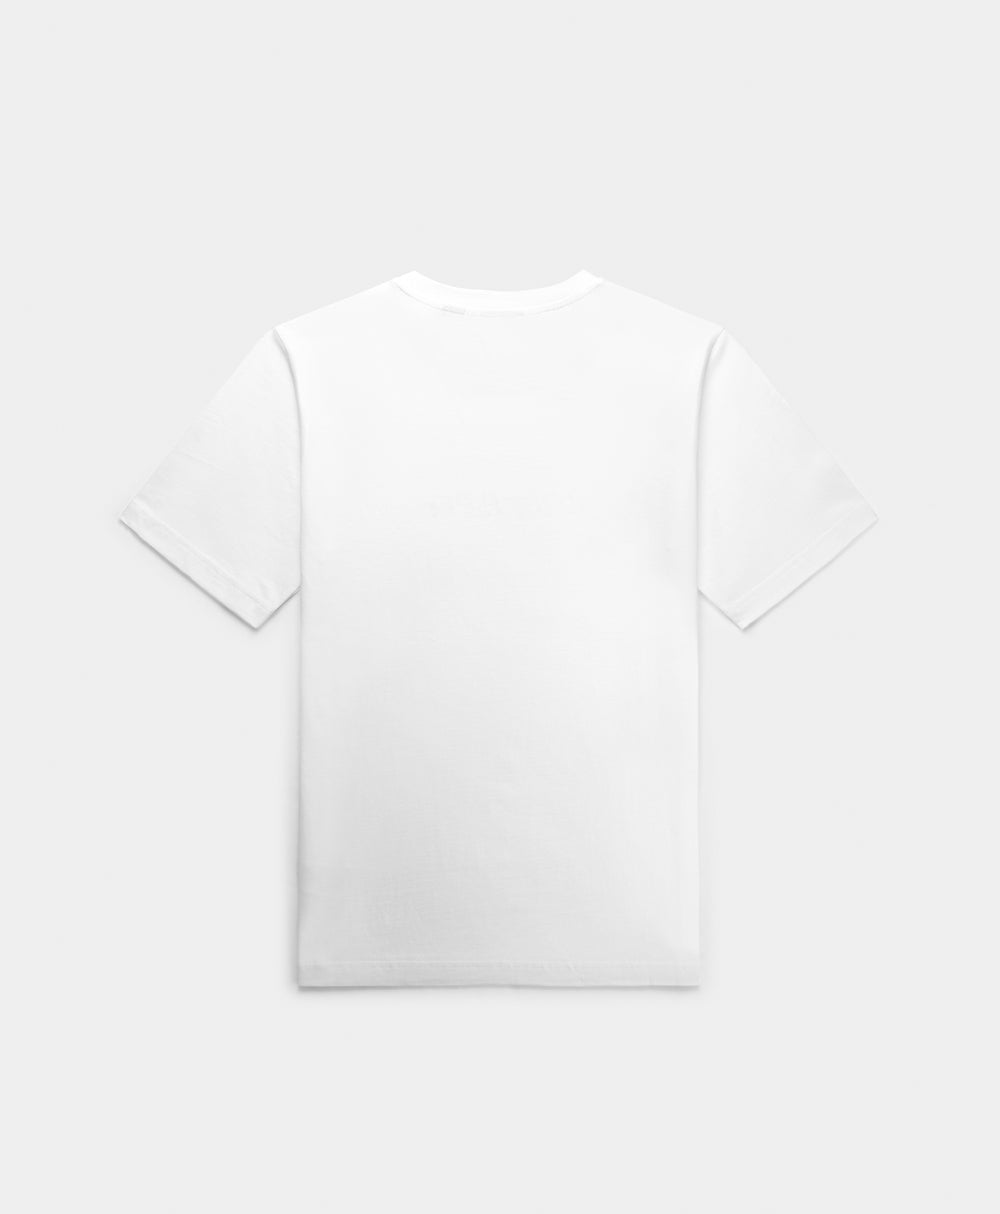 DP - White Unified Type T-Shirt - Packshot - Rear